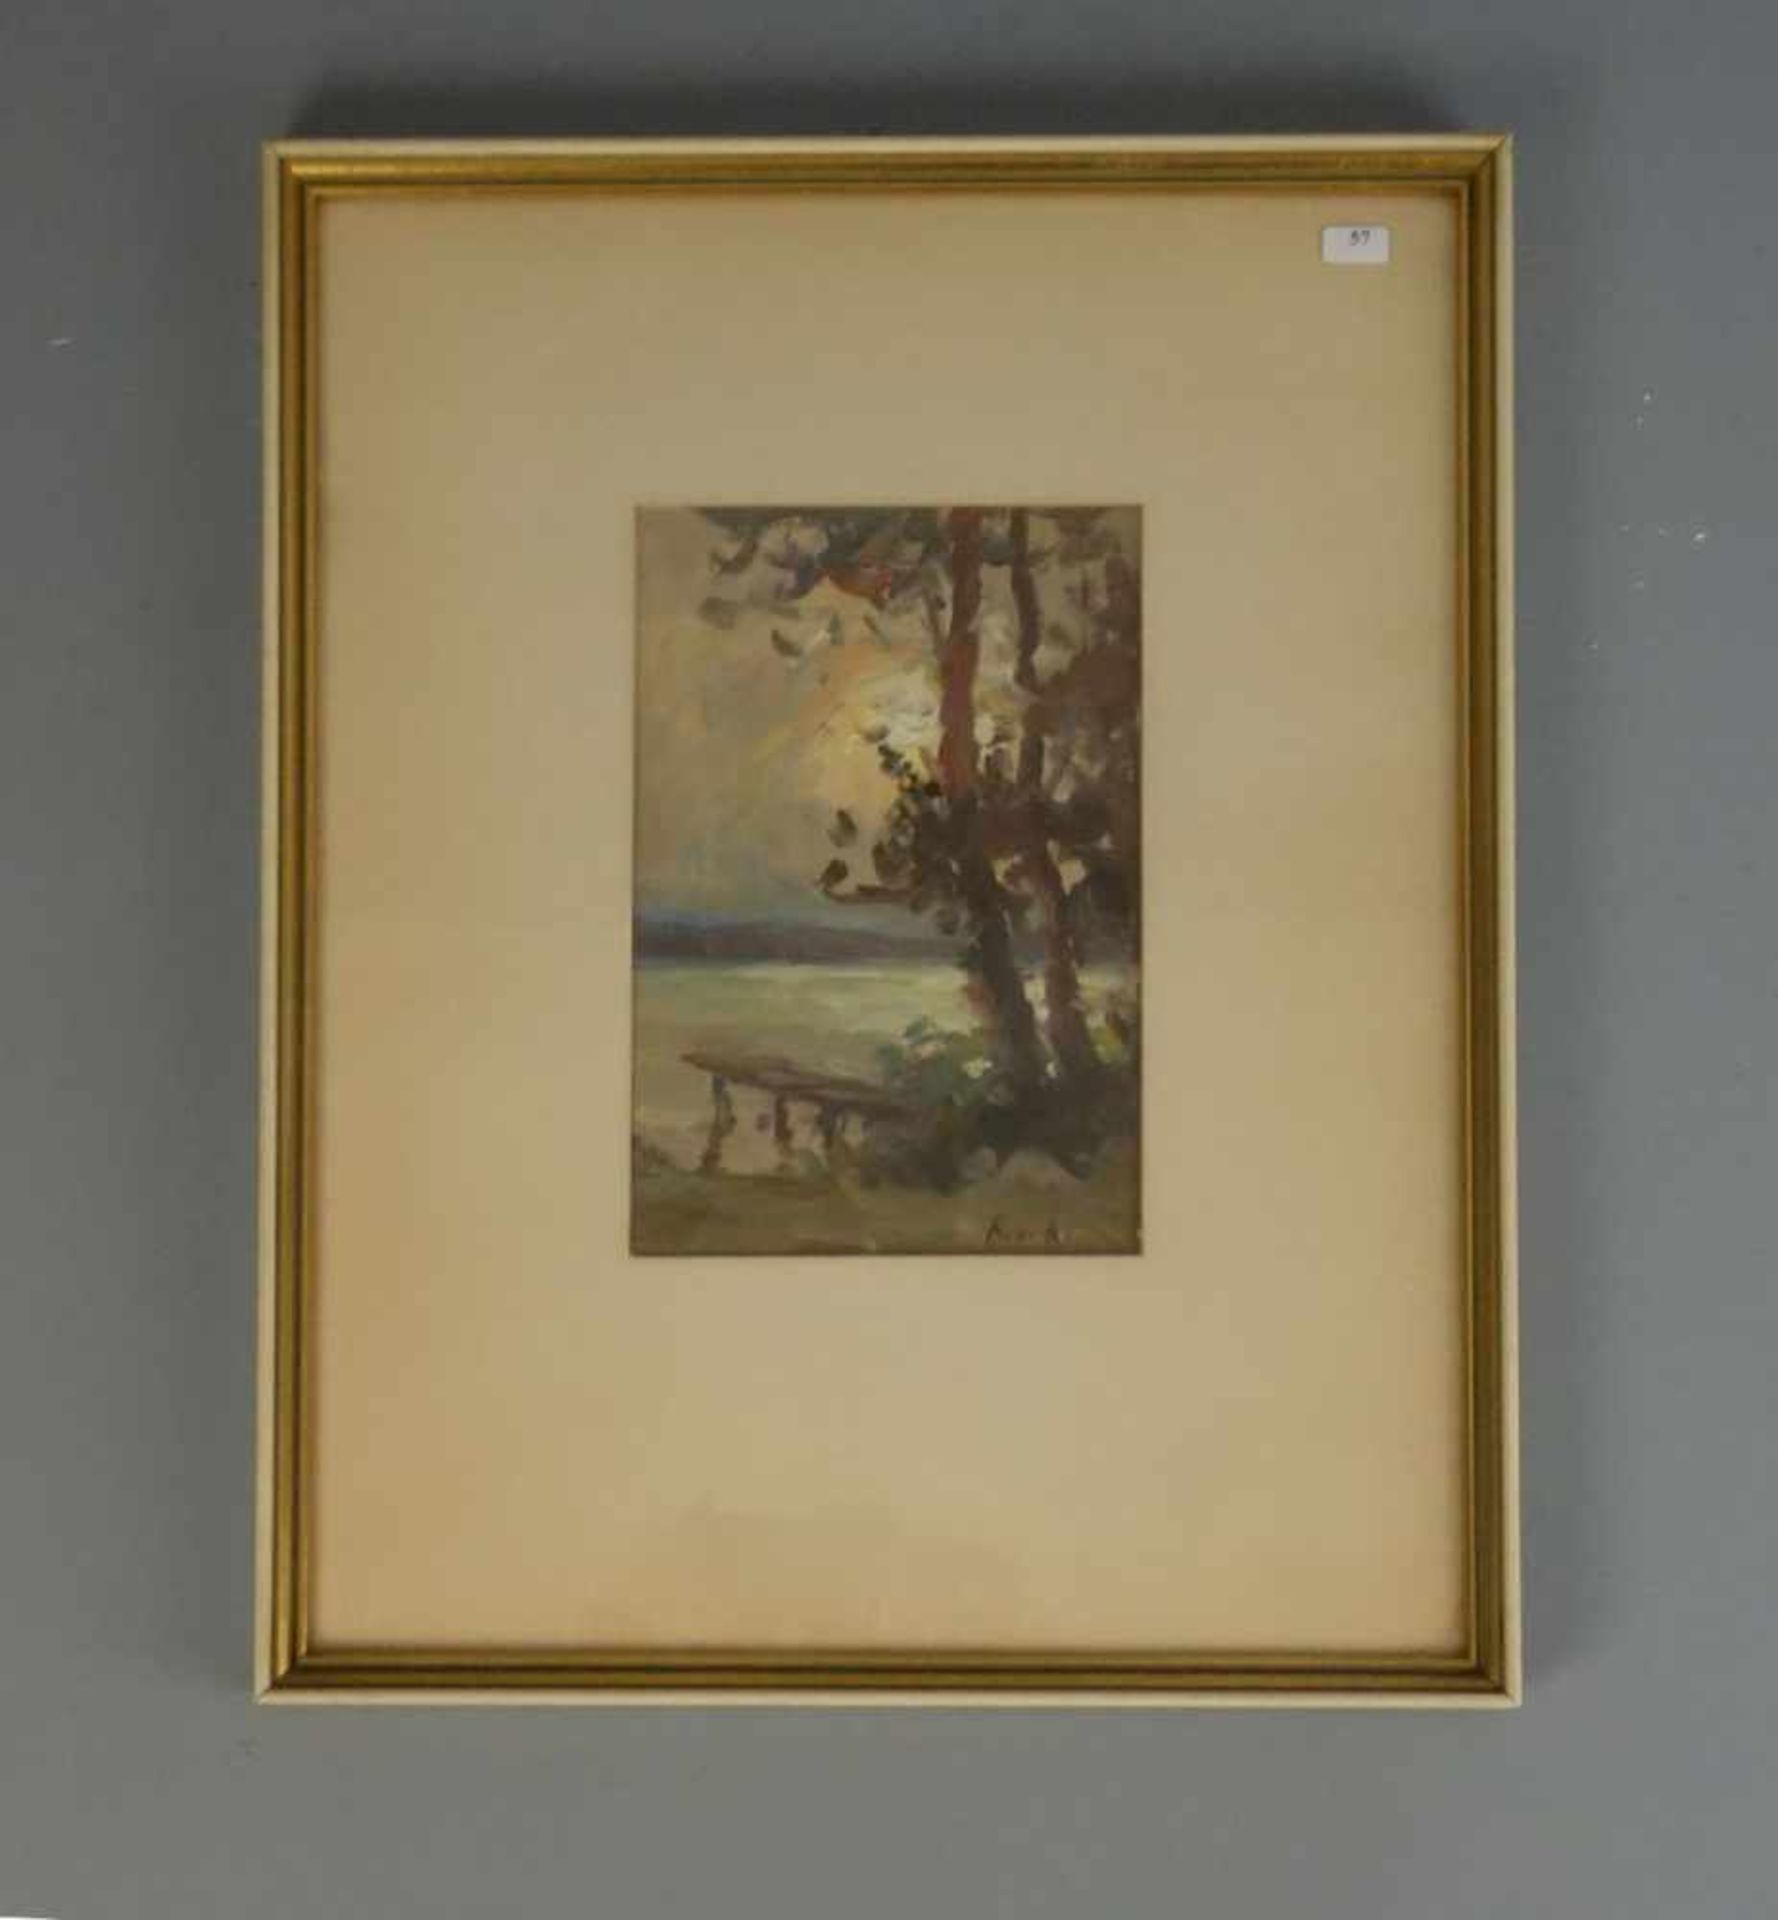 VON ASSAULENKO, ALEXEJ (Kiew 1913 - 1989 Kiel), Gemälde / painting: "Seelandschaft mit Pappeln und